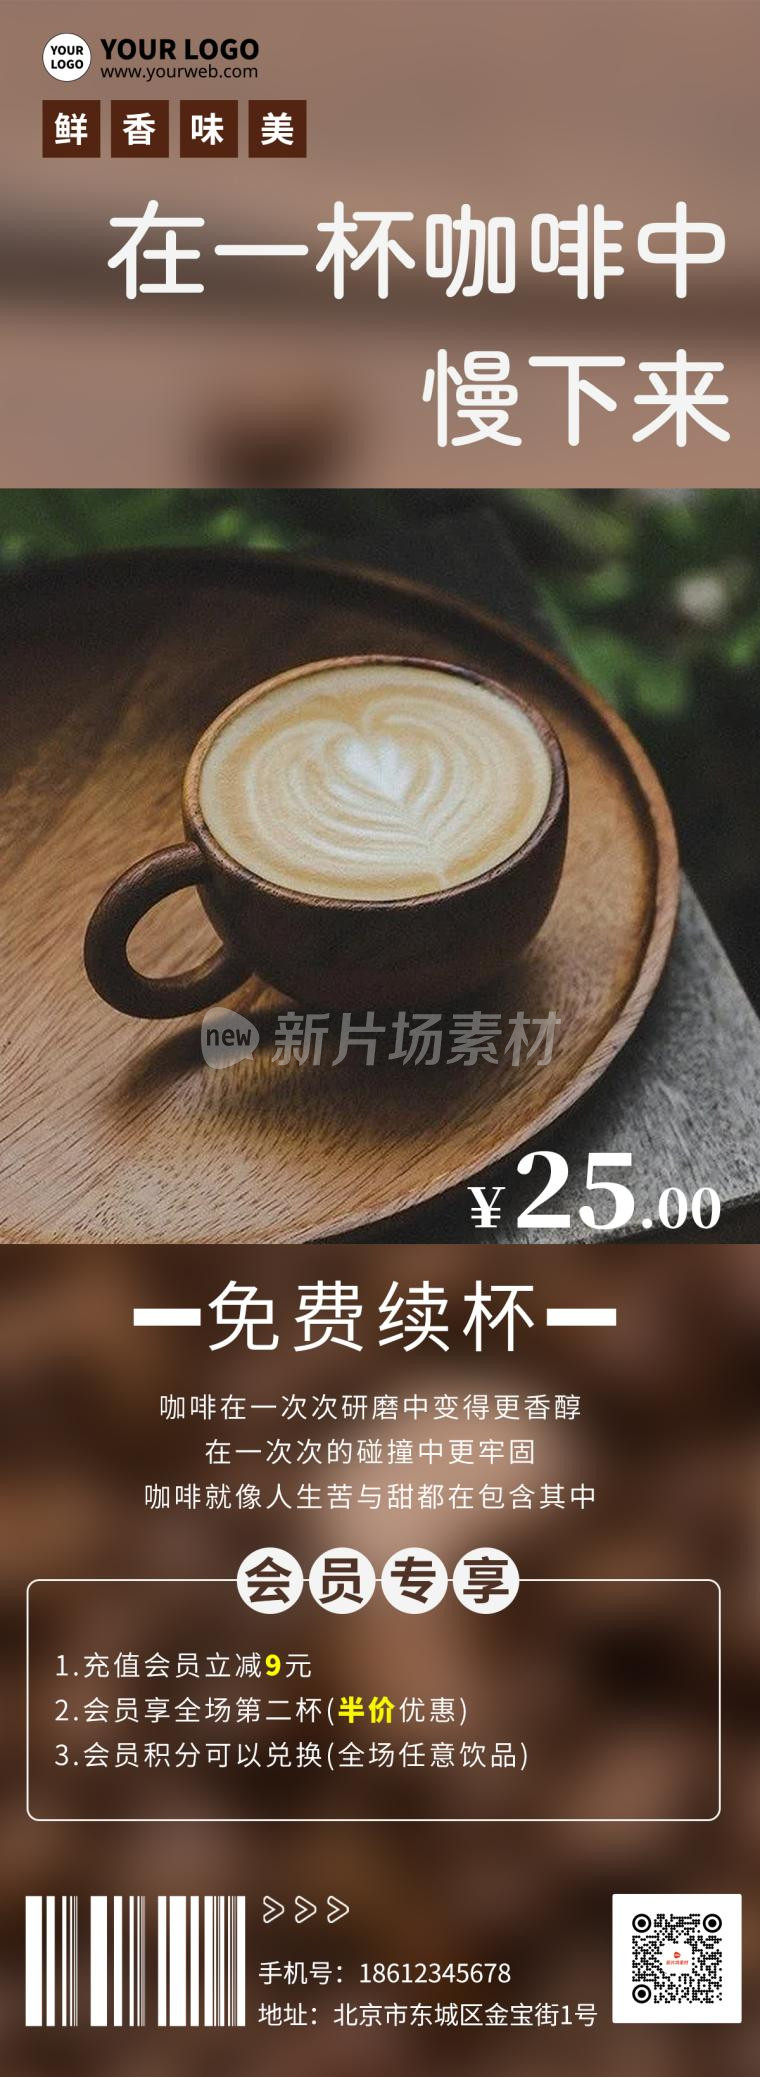 咖啡饮品促销海报长图